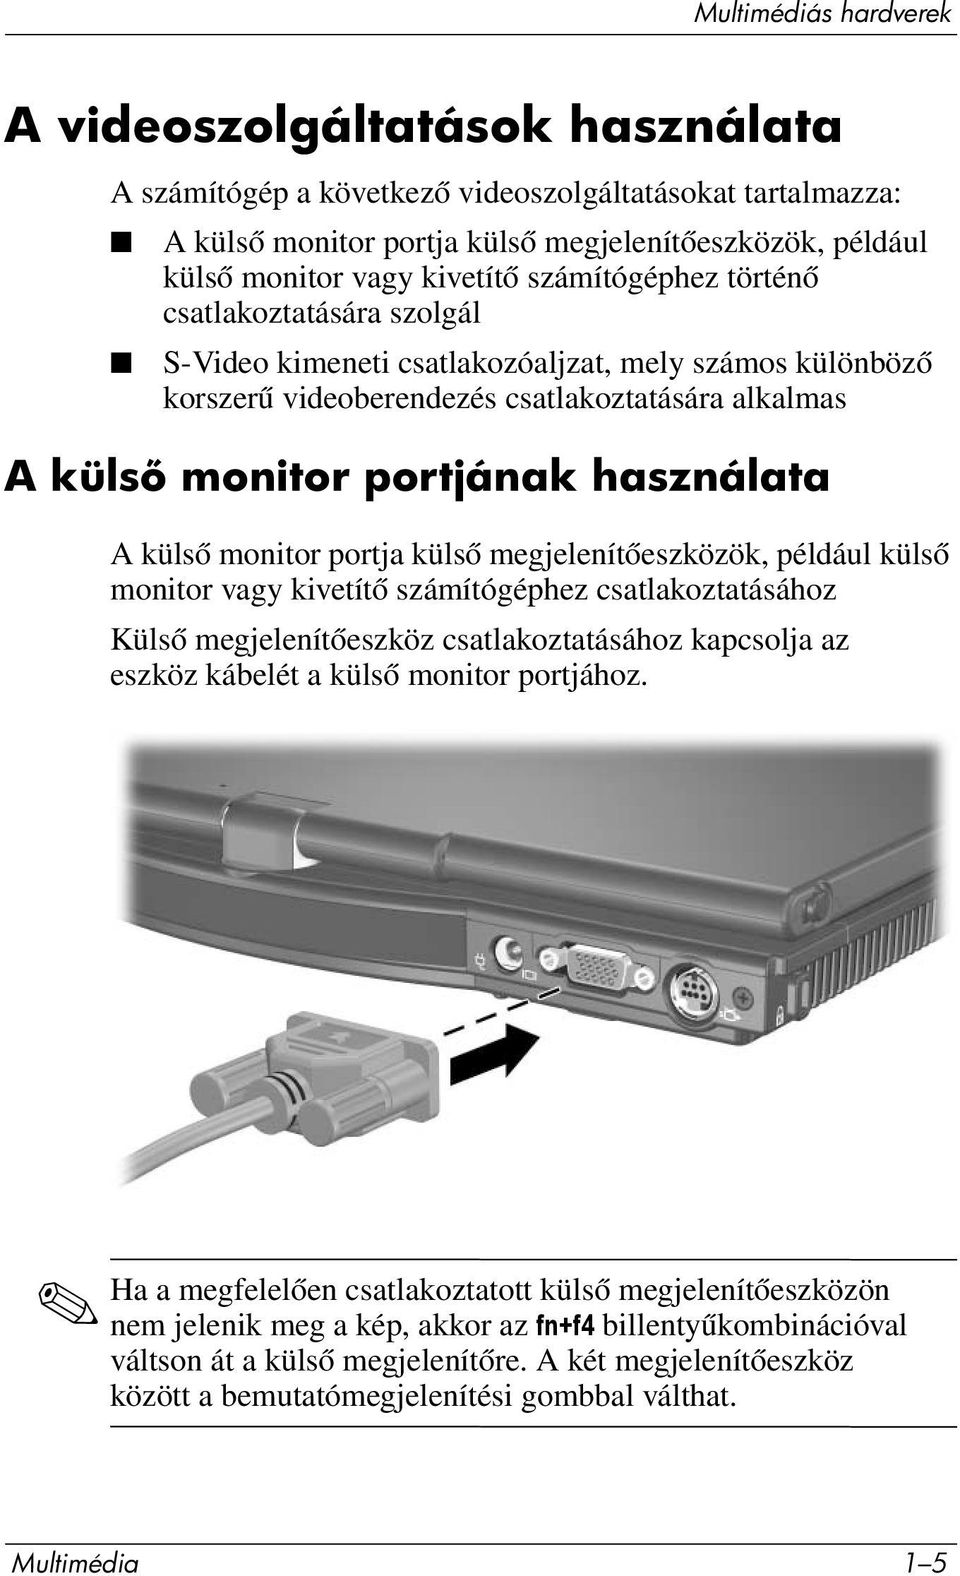 használata A külső monitor portja külső megjelenítőeszközök, például külső monitor vagy kivetítő számítógéphez csatlakoztatásához Külső megjelenítőeszköz csatlakoztatásához kapcsolja az eszköz